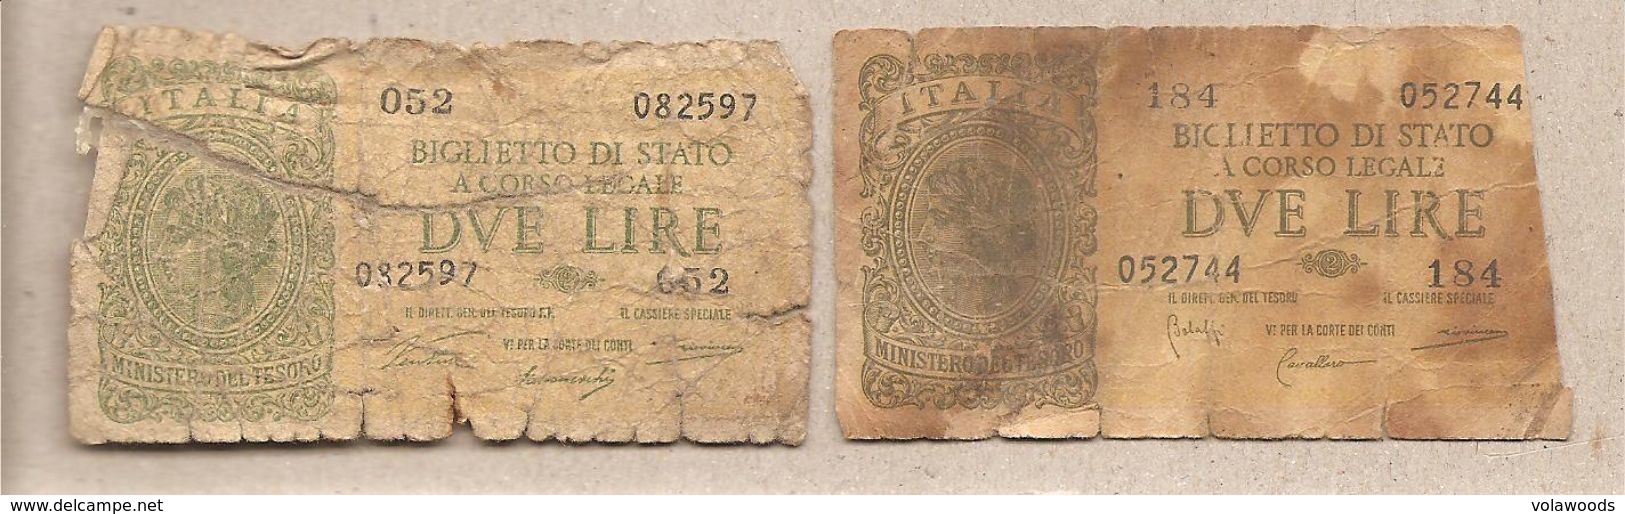 Italia - Banconote Circolate Da 2 Lire "Italia Laureata" - 1944 Serie Completa Dei Due Decreti Emessi - Colecciones